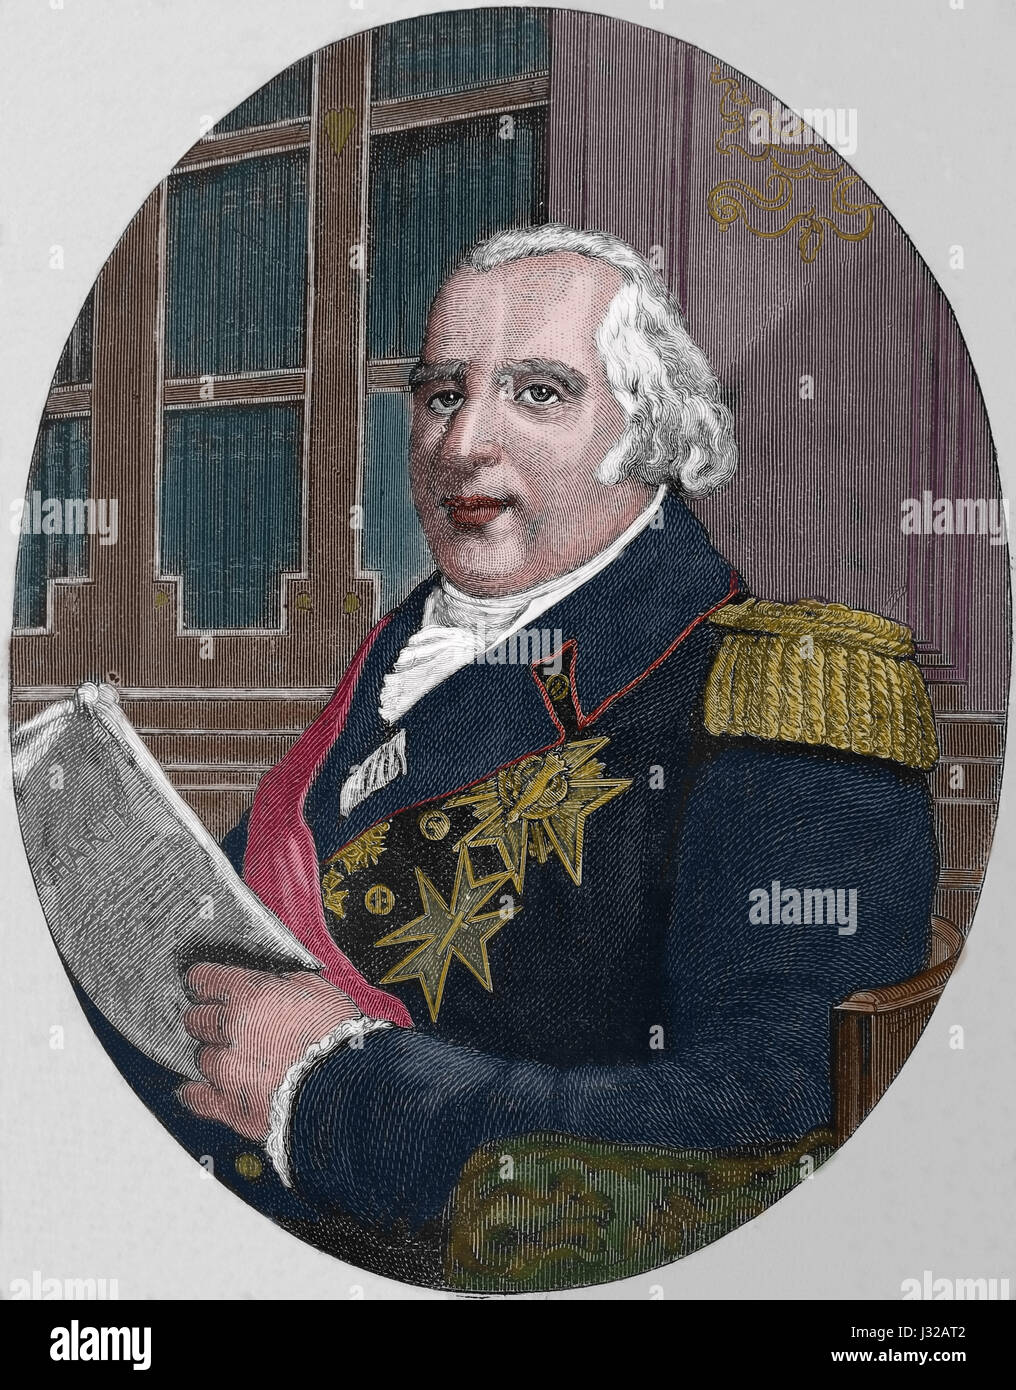 Luigi XVIII di Francia (1755-1824). La desiderata. Re di Francia. Ritratto. Incisione, Nuestro Siglo, 1883. Edizione spagnola. Foto Stock